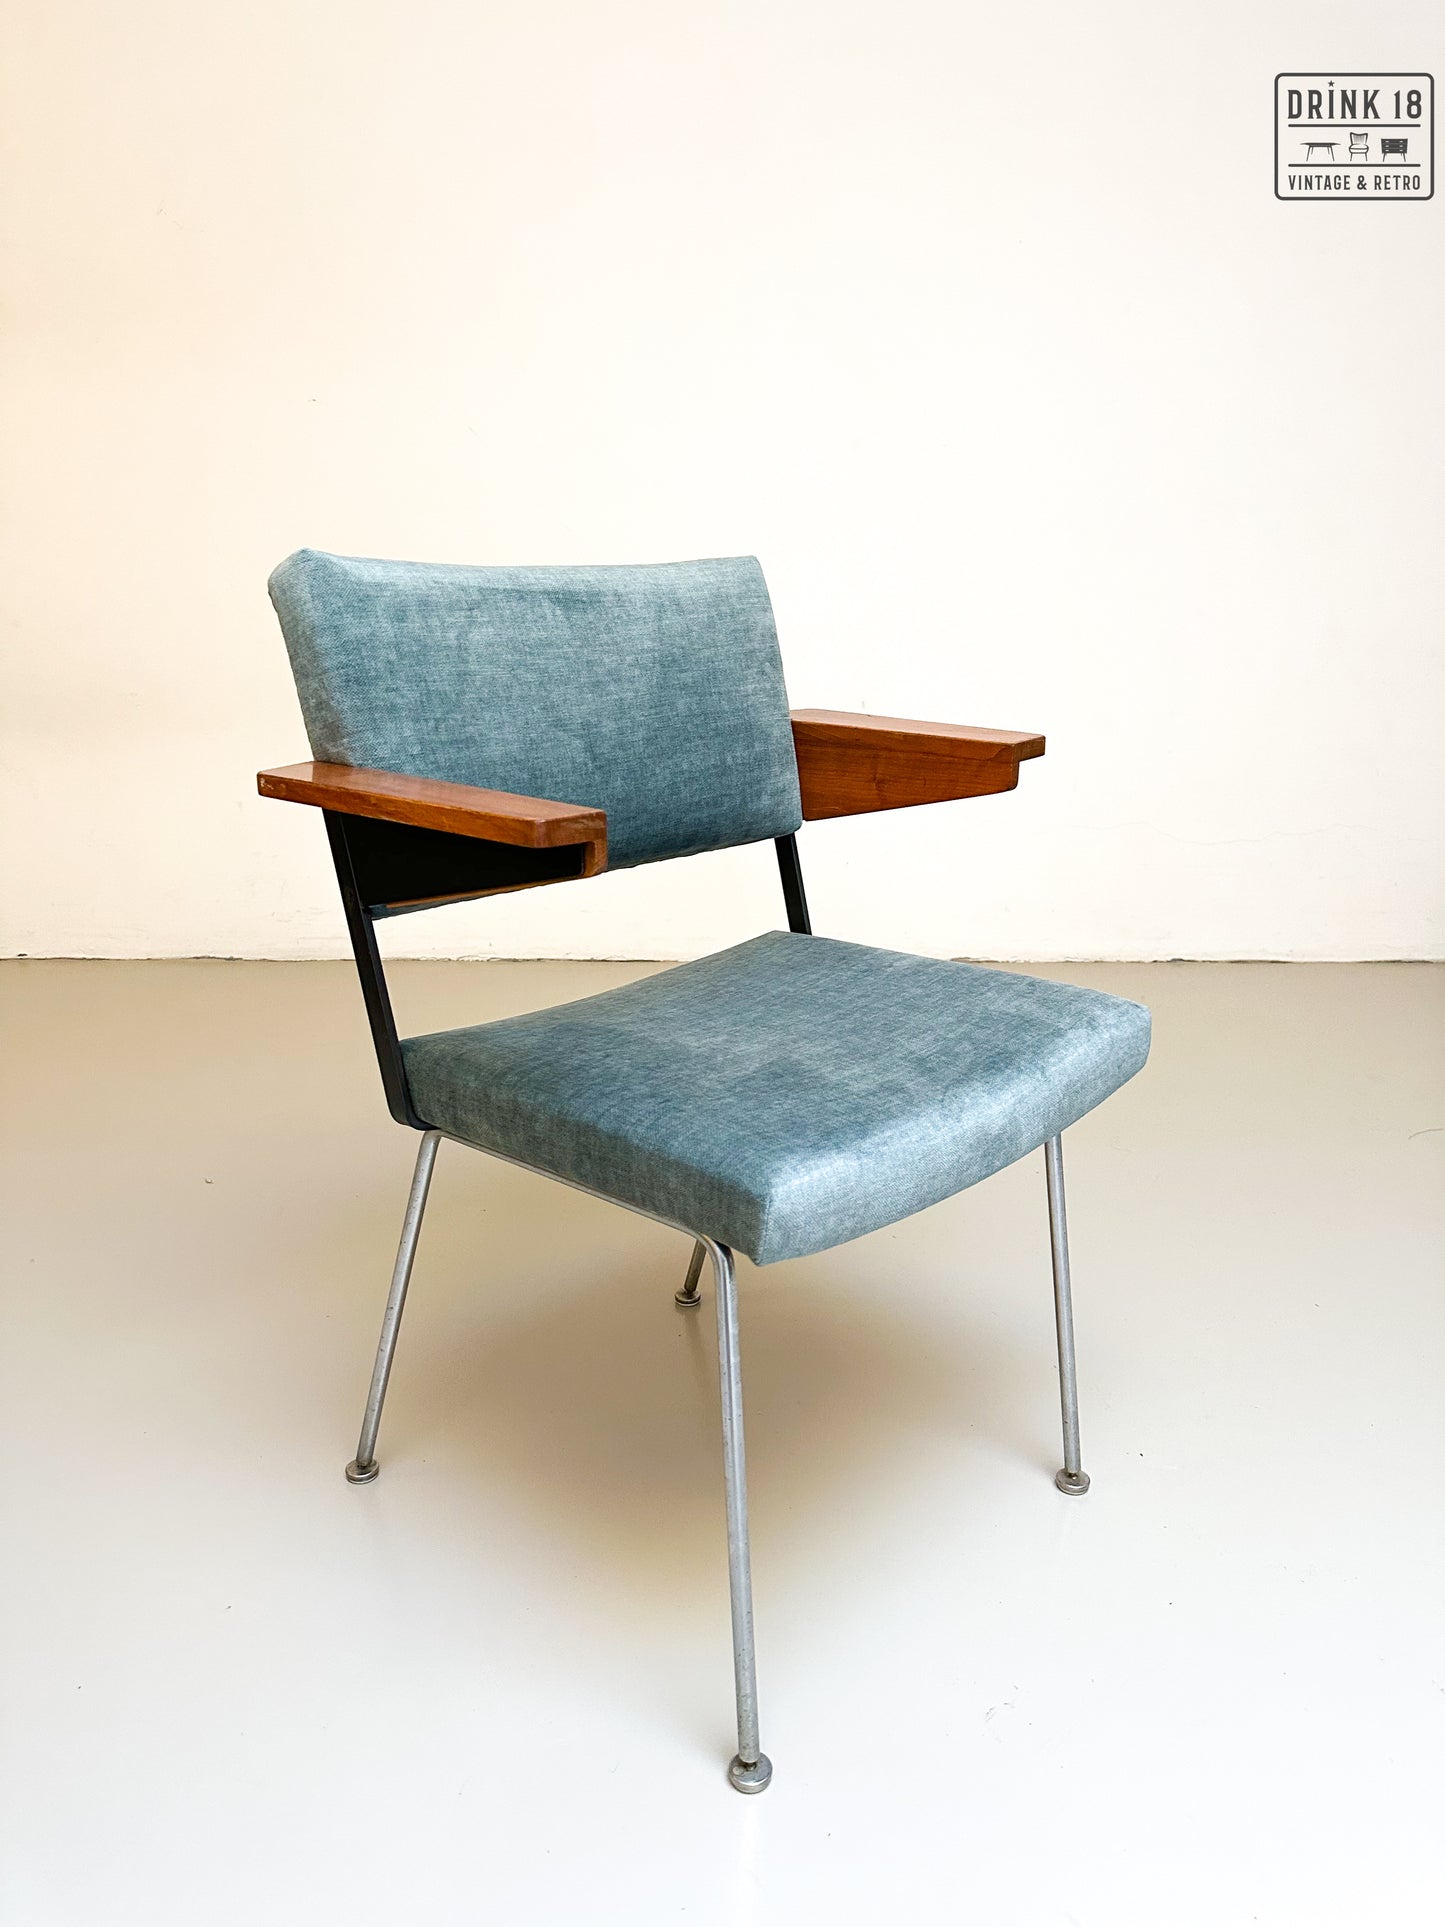 Vier model 1445 stoelen - Gispen door André Cordemeyer